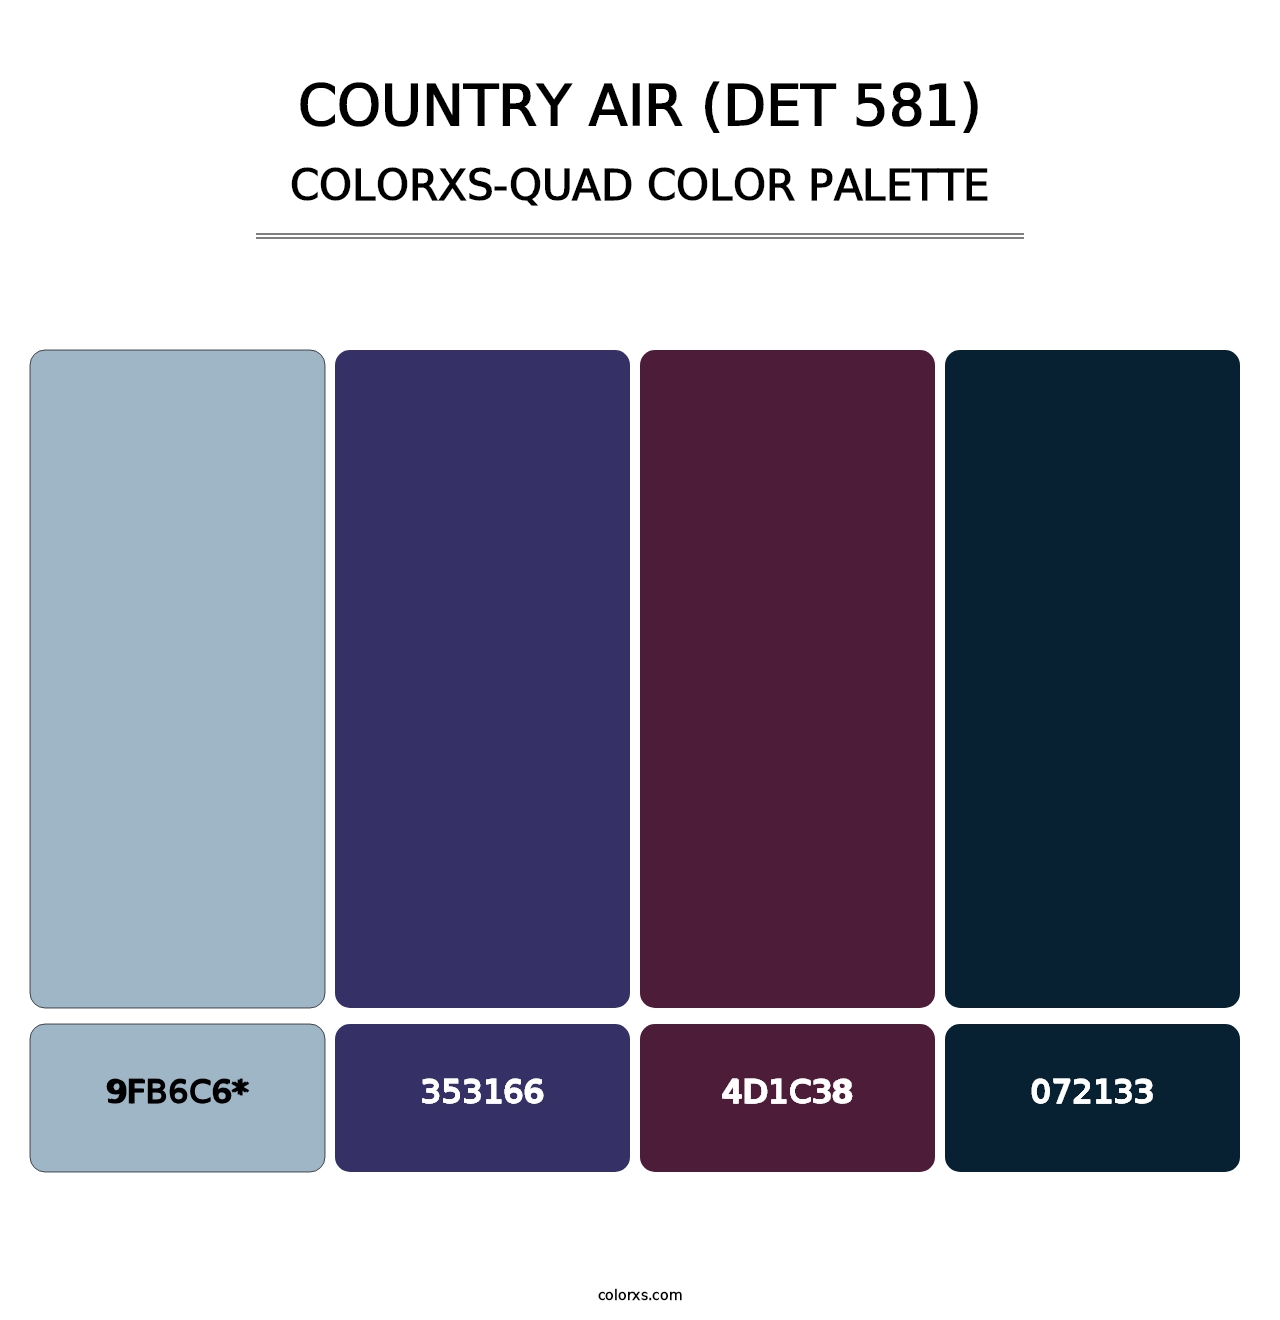 Country Air (DET 581) - Colorxs Quad Palette